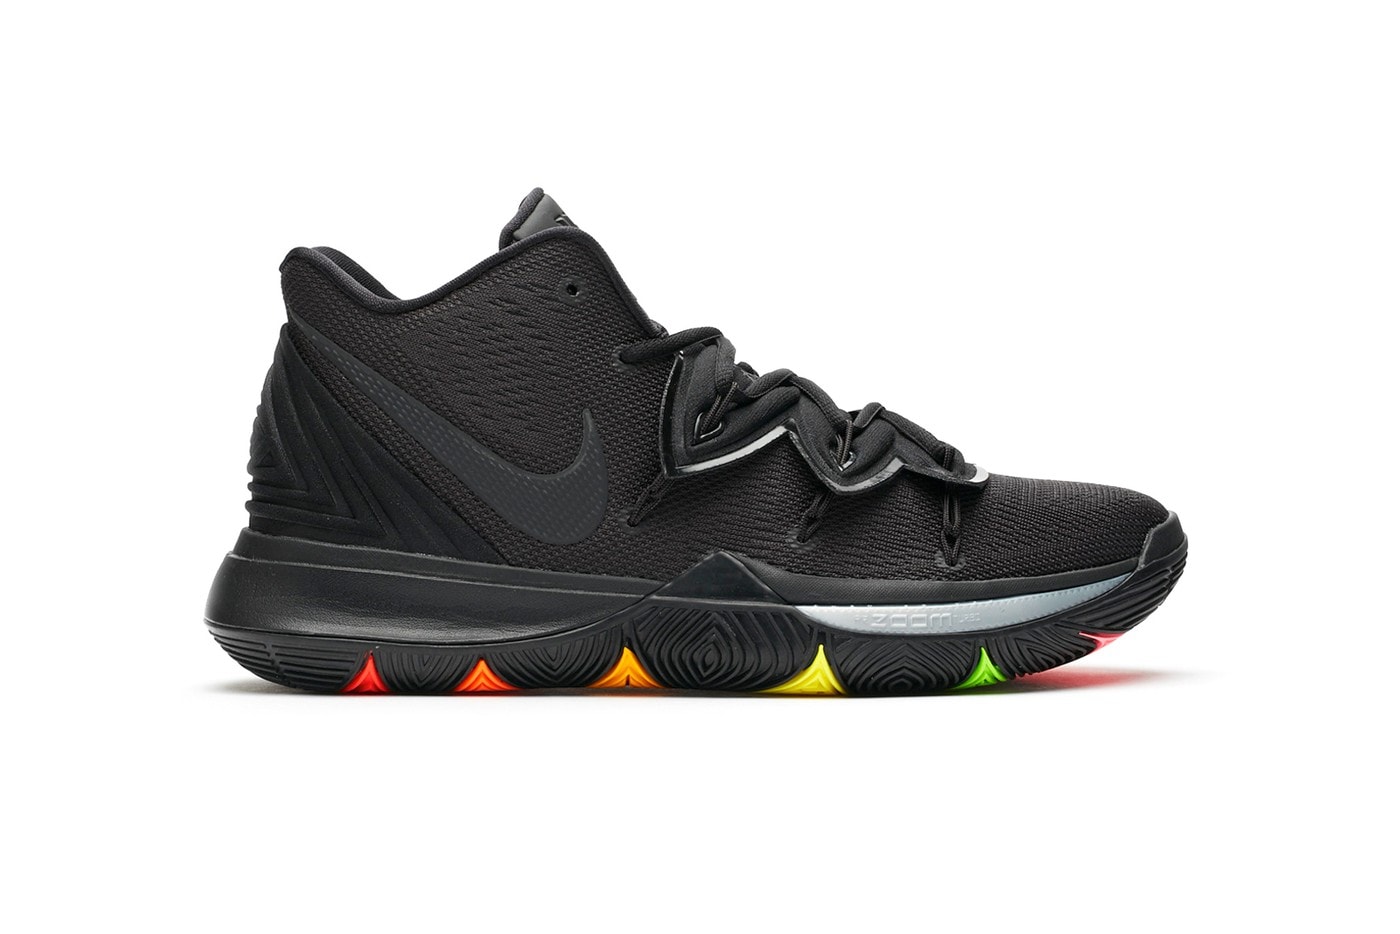 Nike Kyrie 5 推出全新「Black/Rainbow」配色